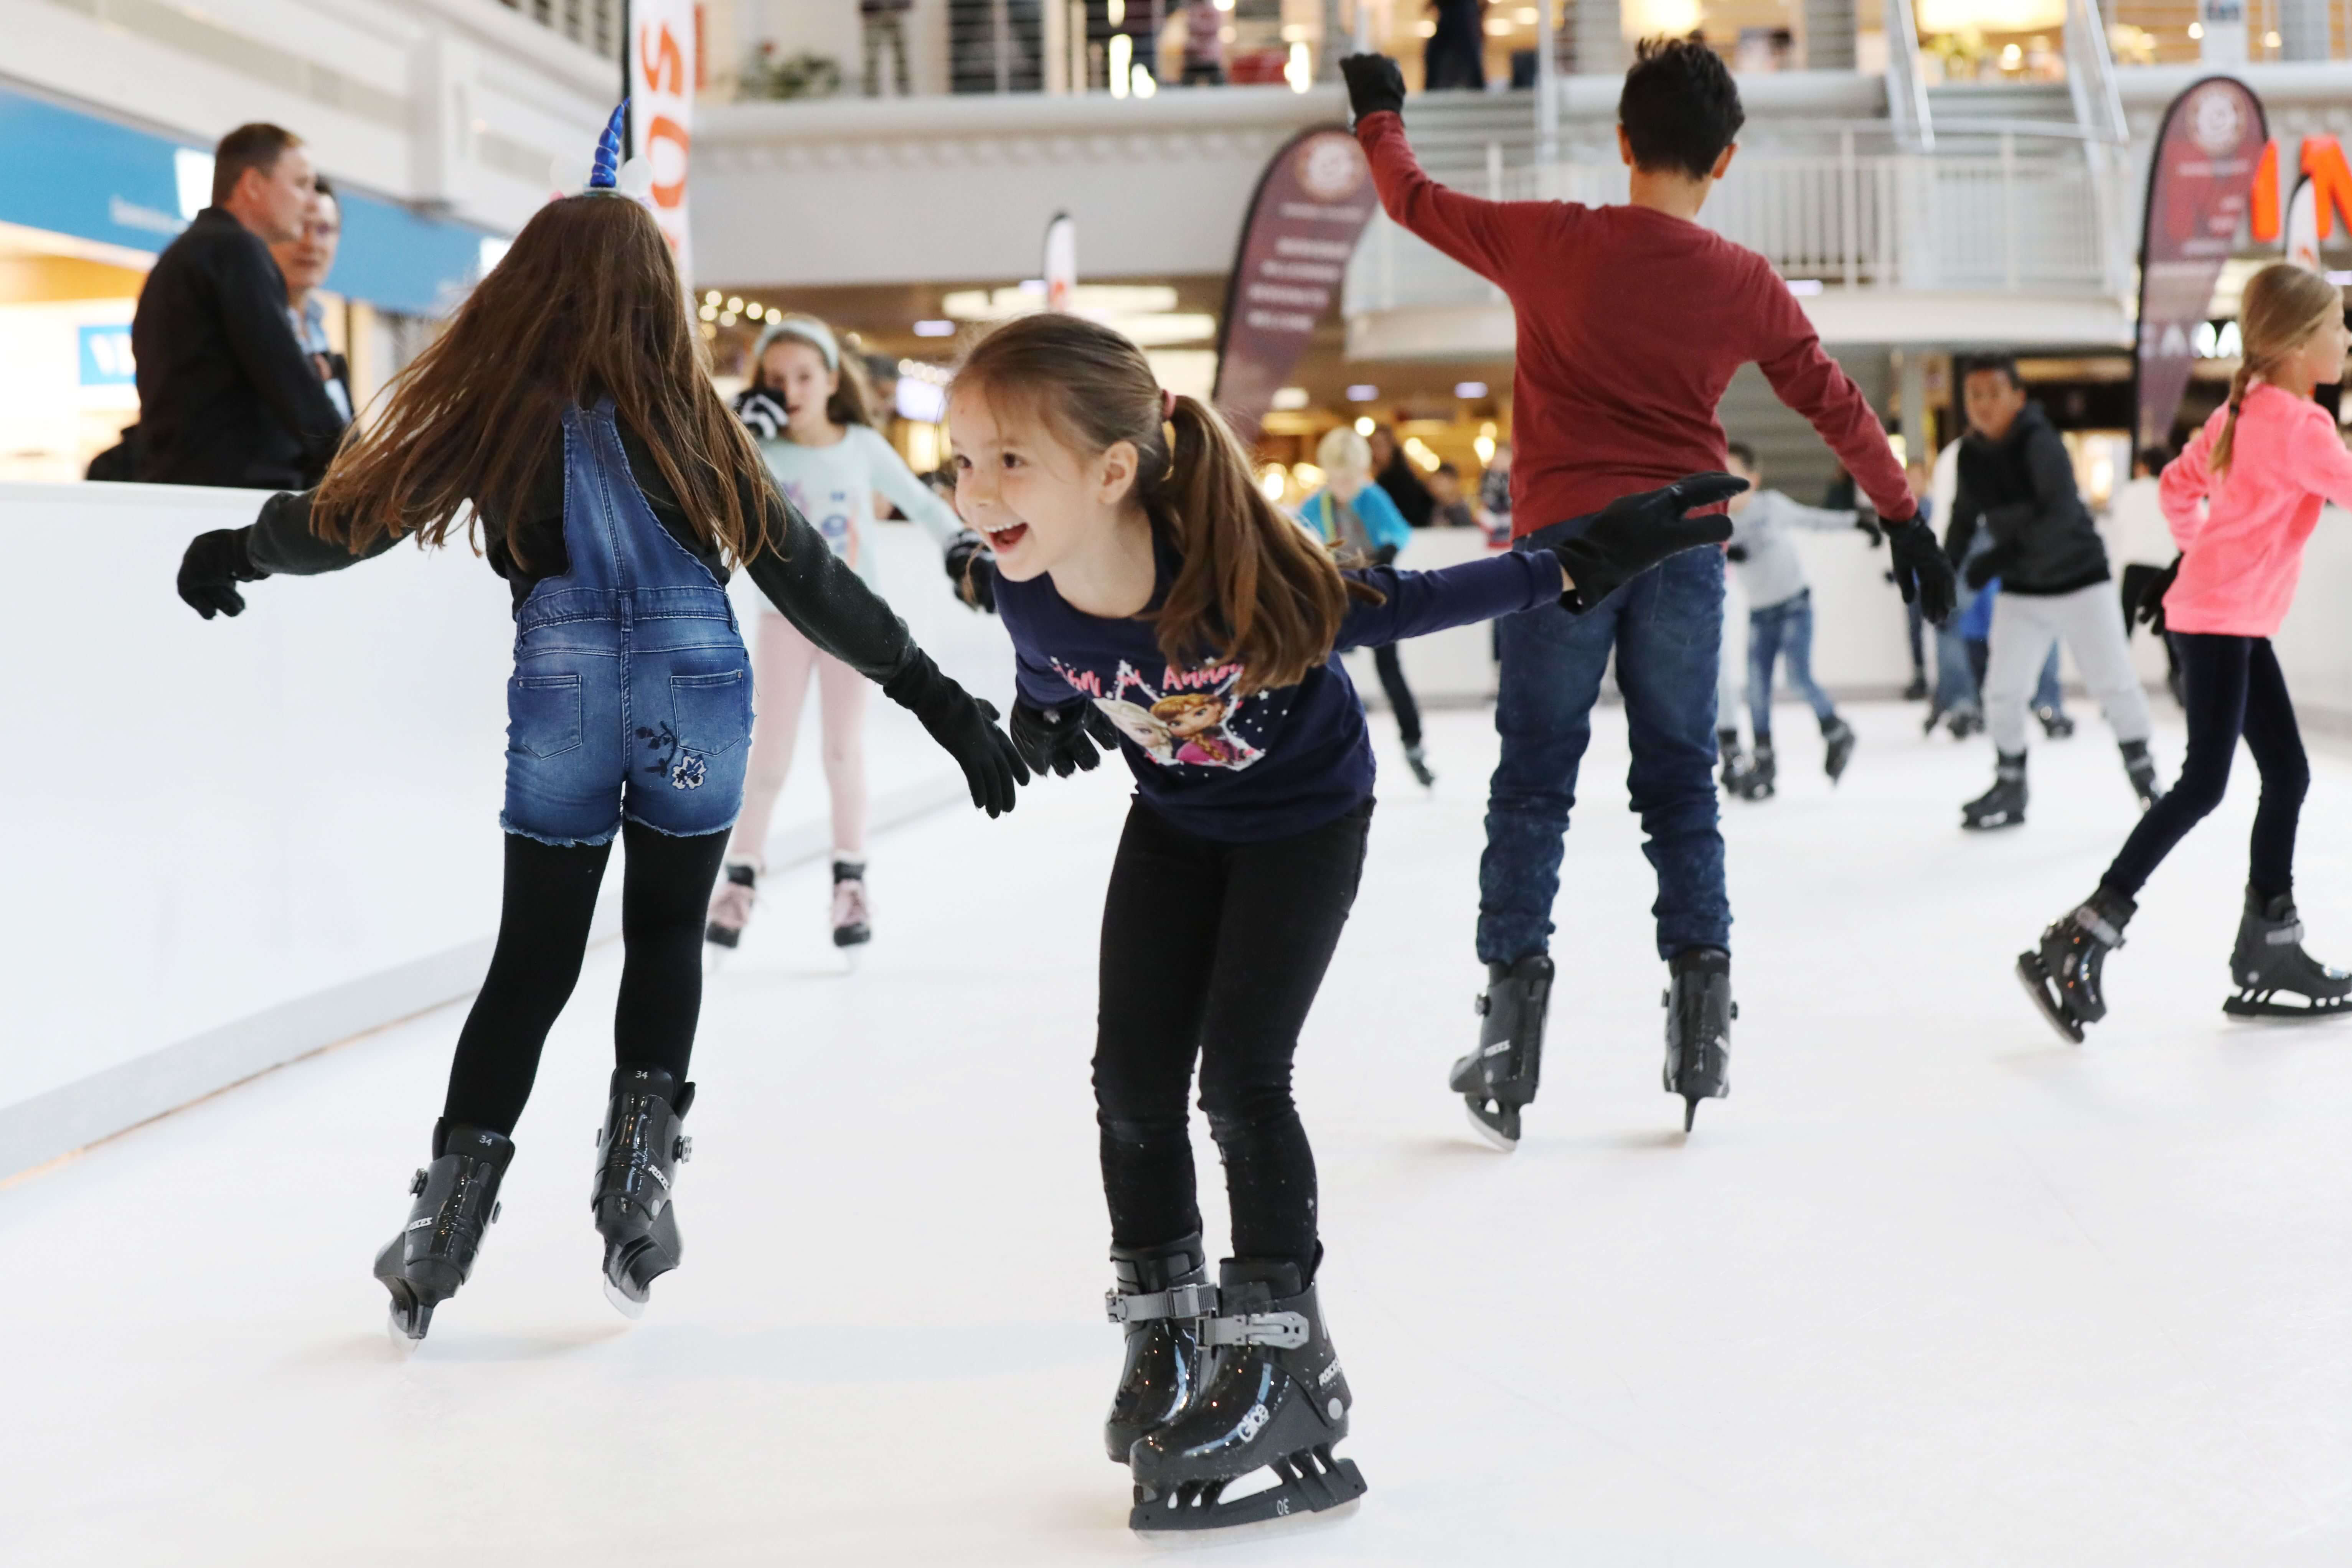 Покататься на коньках сегодня. Айс скейтинг. Кататься на коньках. Каток коньки. Дети на катке.